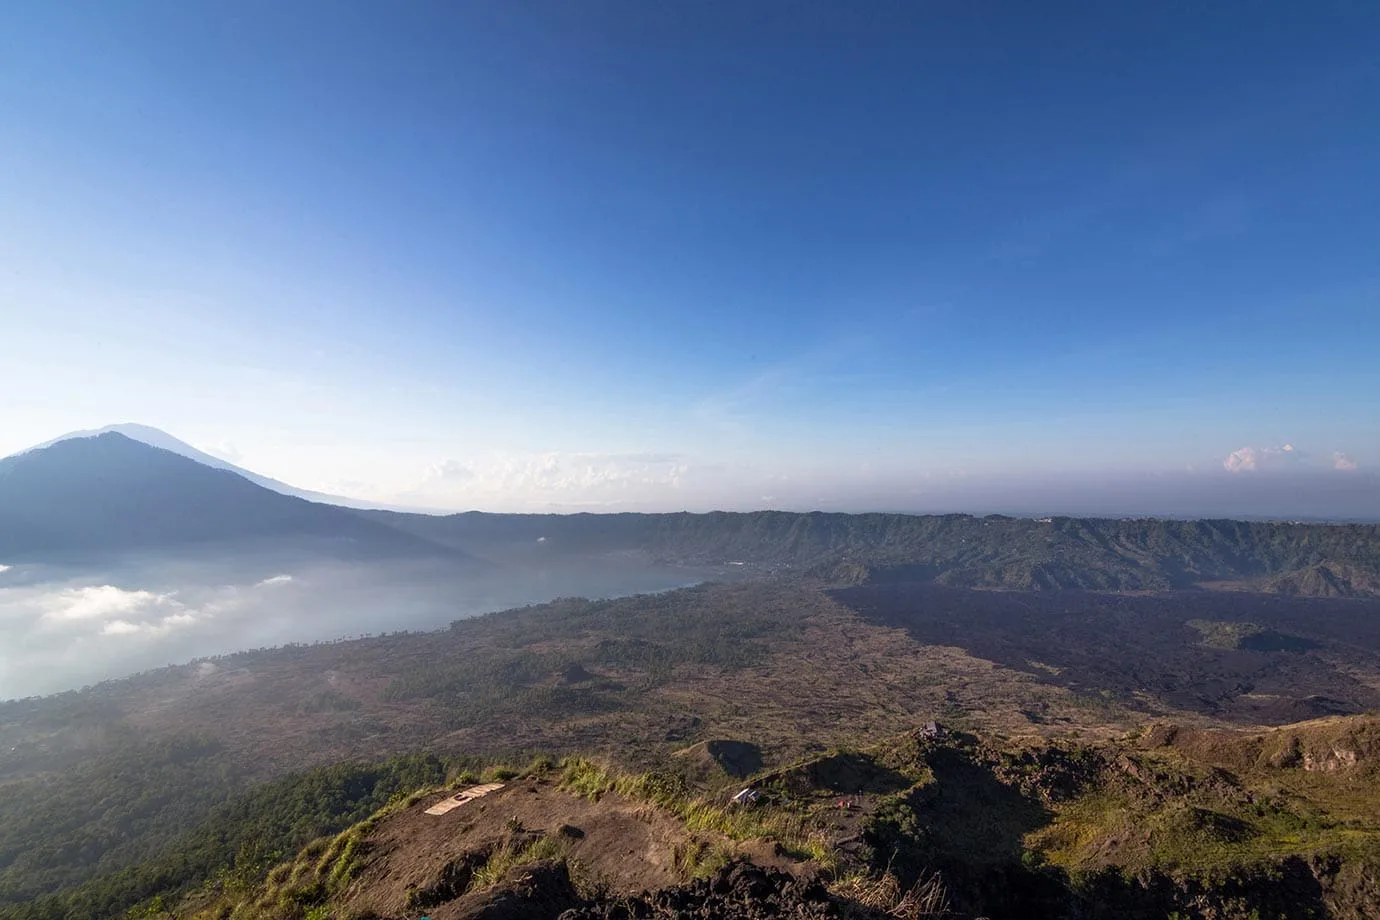 Views from Mount Batur